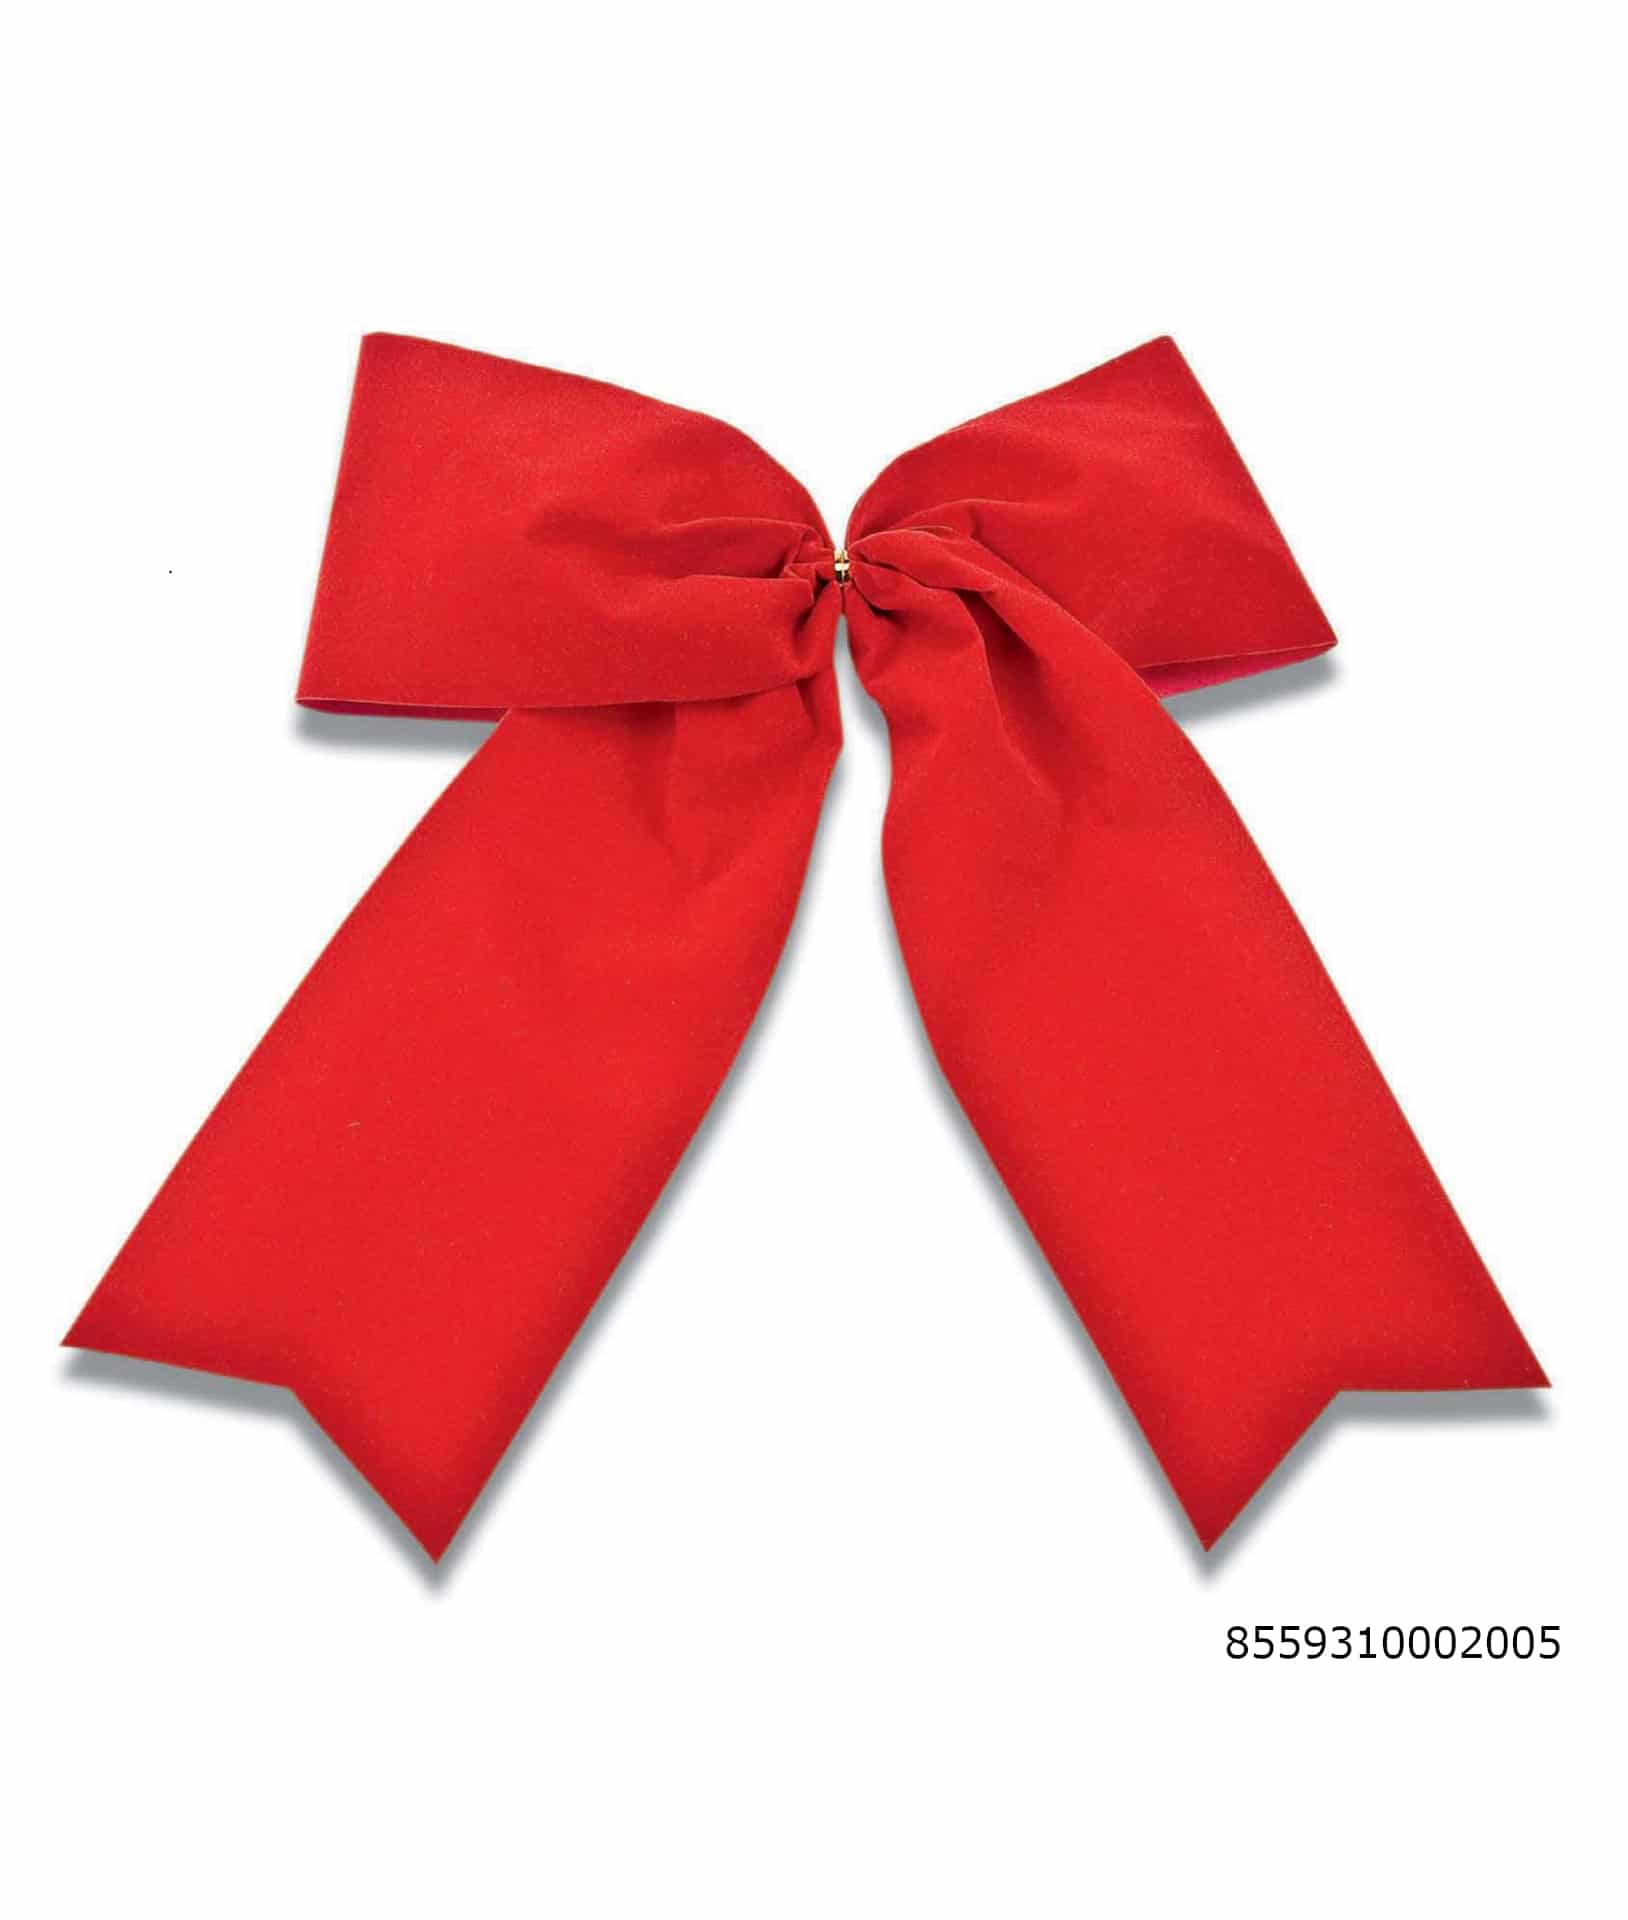 Große Samtschleife rot, Durchmesser ca. 26cm, Outdoor geeignet - weihnachtsband-2, geschenkverpackung, weihnachtsbaender, outdoor-bander, fertigschleifen